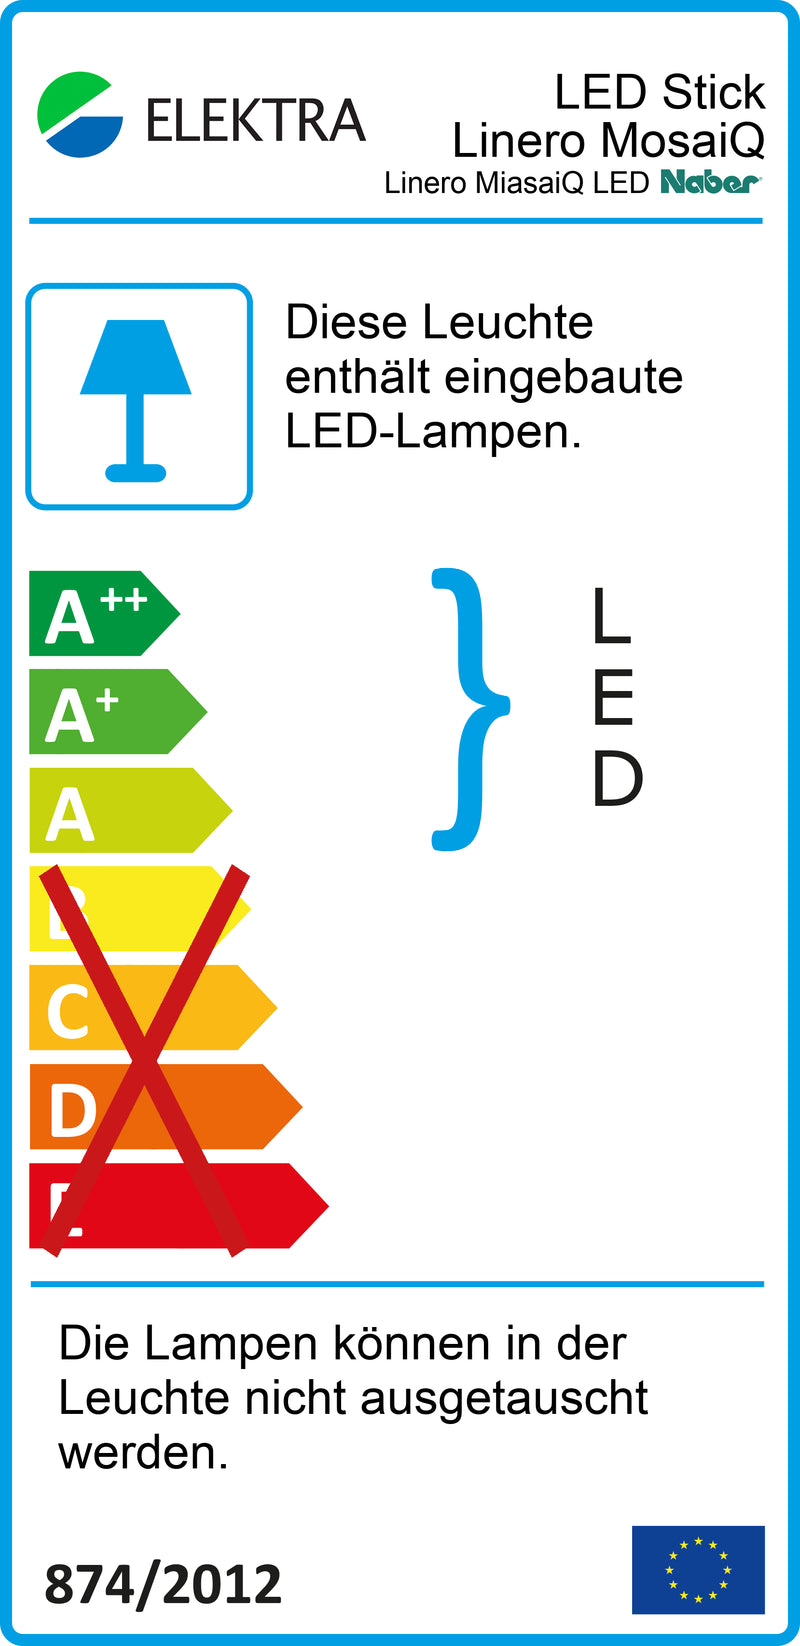 E-Label zu Linero MosaiQ LED Stripe als Variante L 1500 mm von Naber GmbH in der Kategorie Nischenausstattung in Österreich auf conceptshop.at